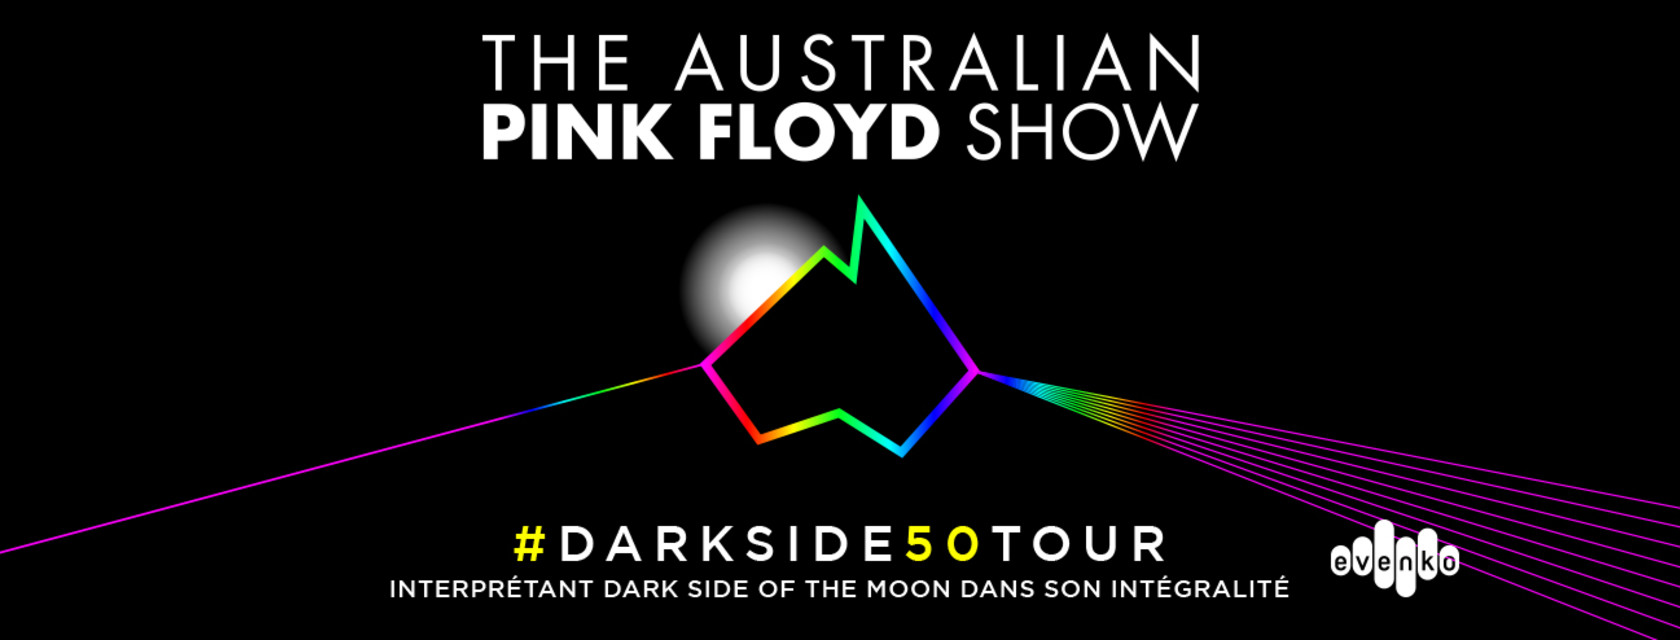 The Australian Pink Floyd Show de retour à l’Amphithéâtre Cogeco en 2023